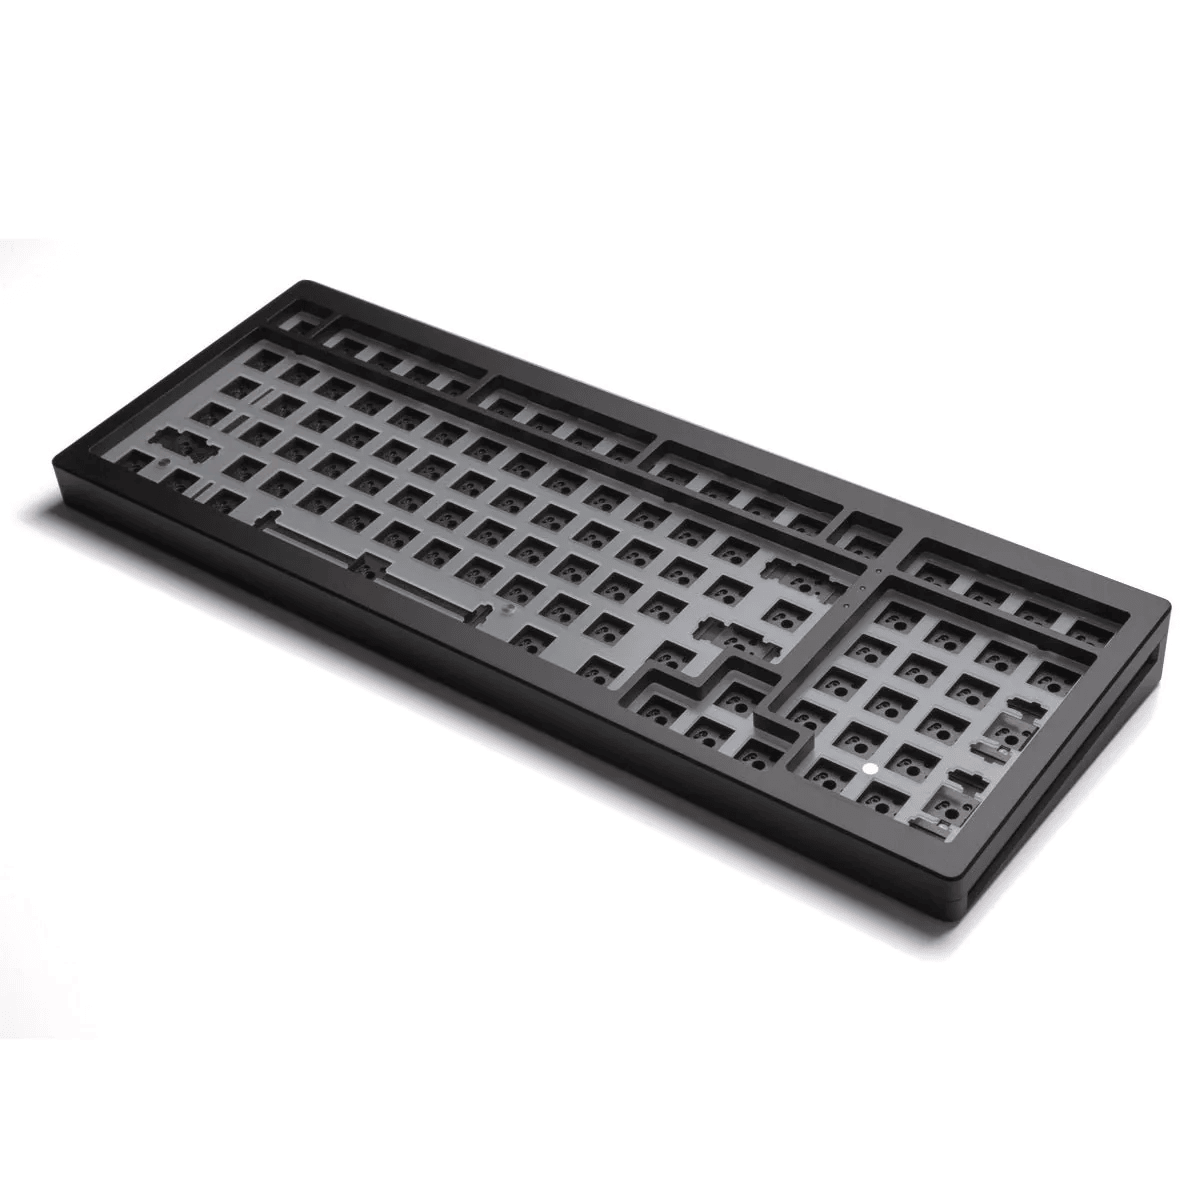 Monsgeek M2 1800 - Barebones Keyboard Kit